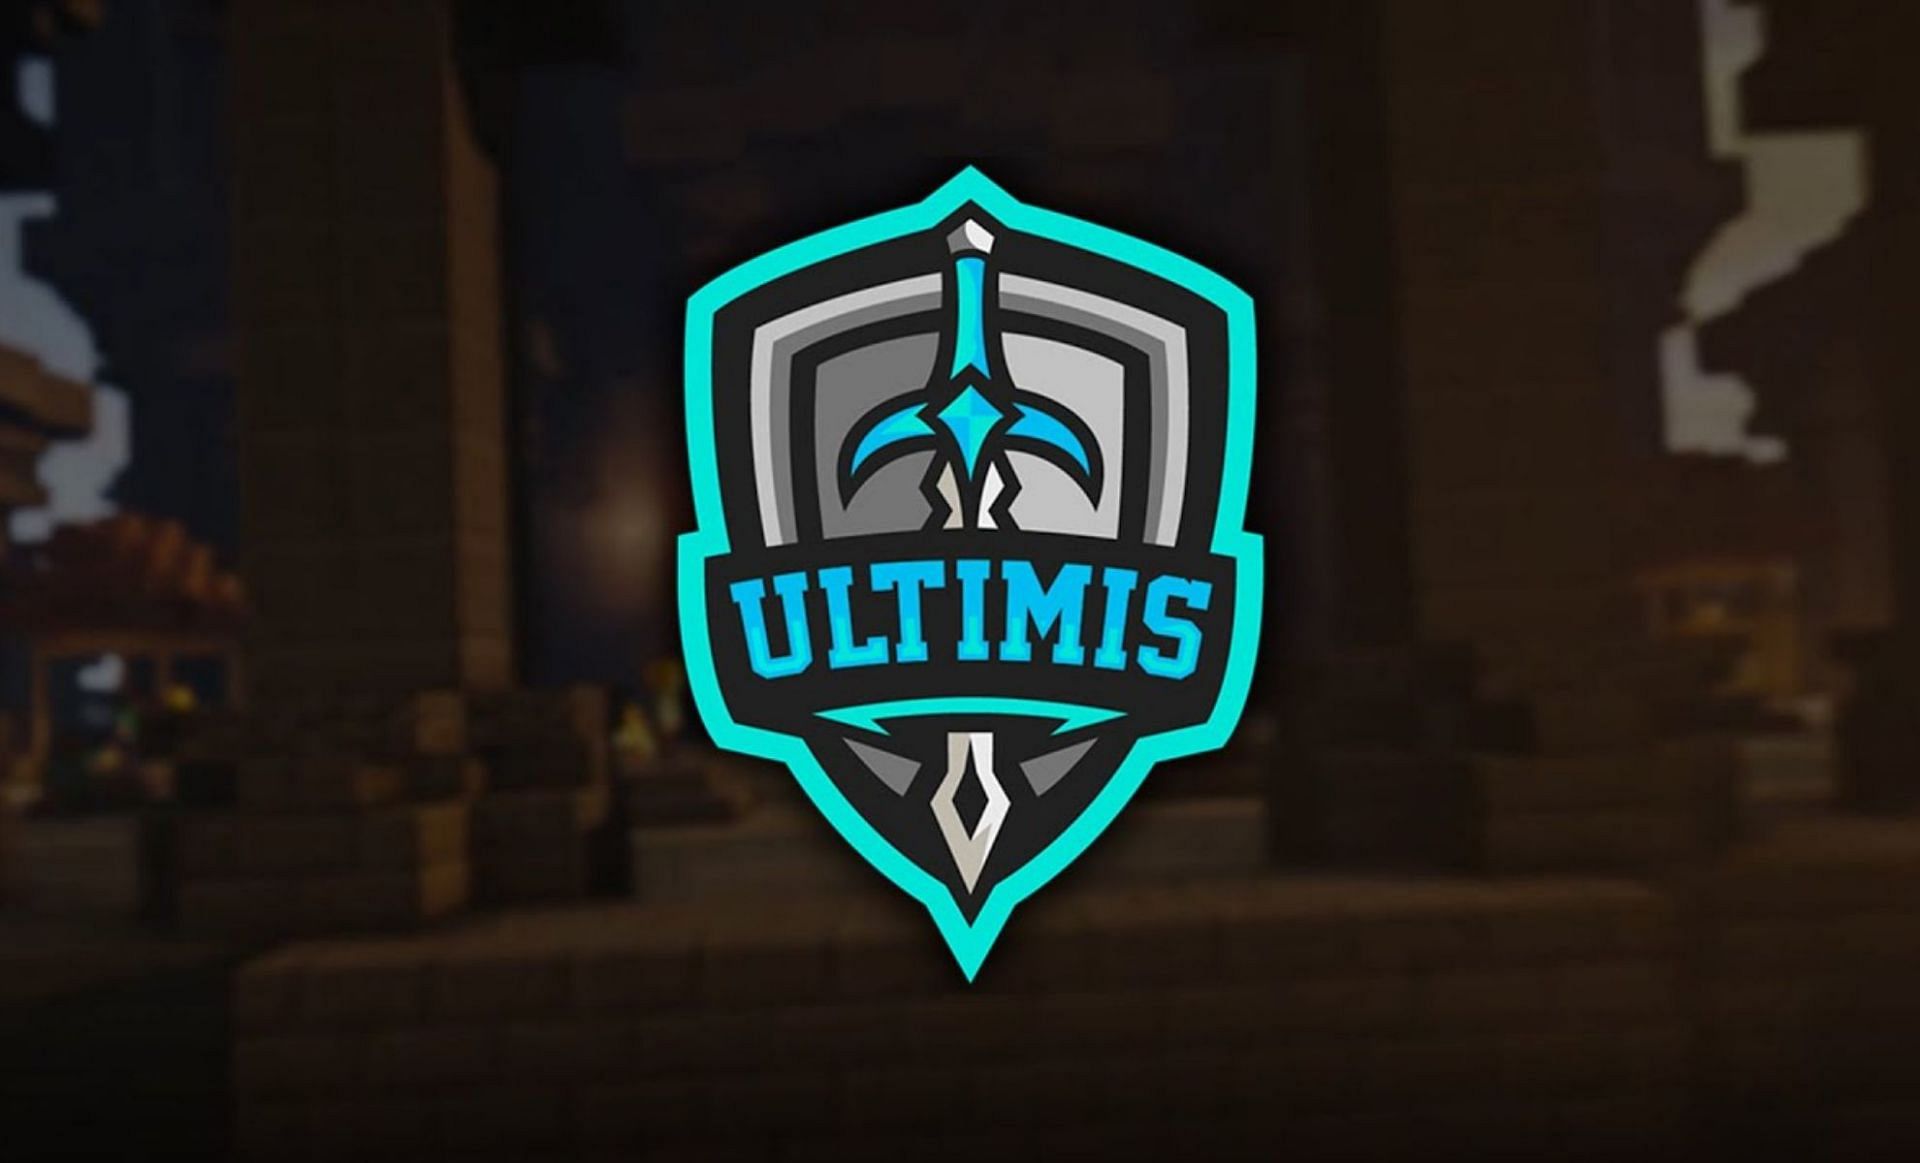 UltimisMC (Image via TopMinecraftServers)